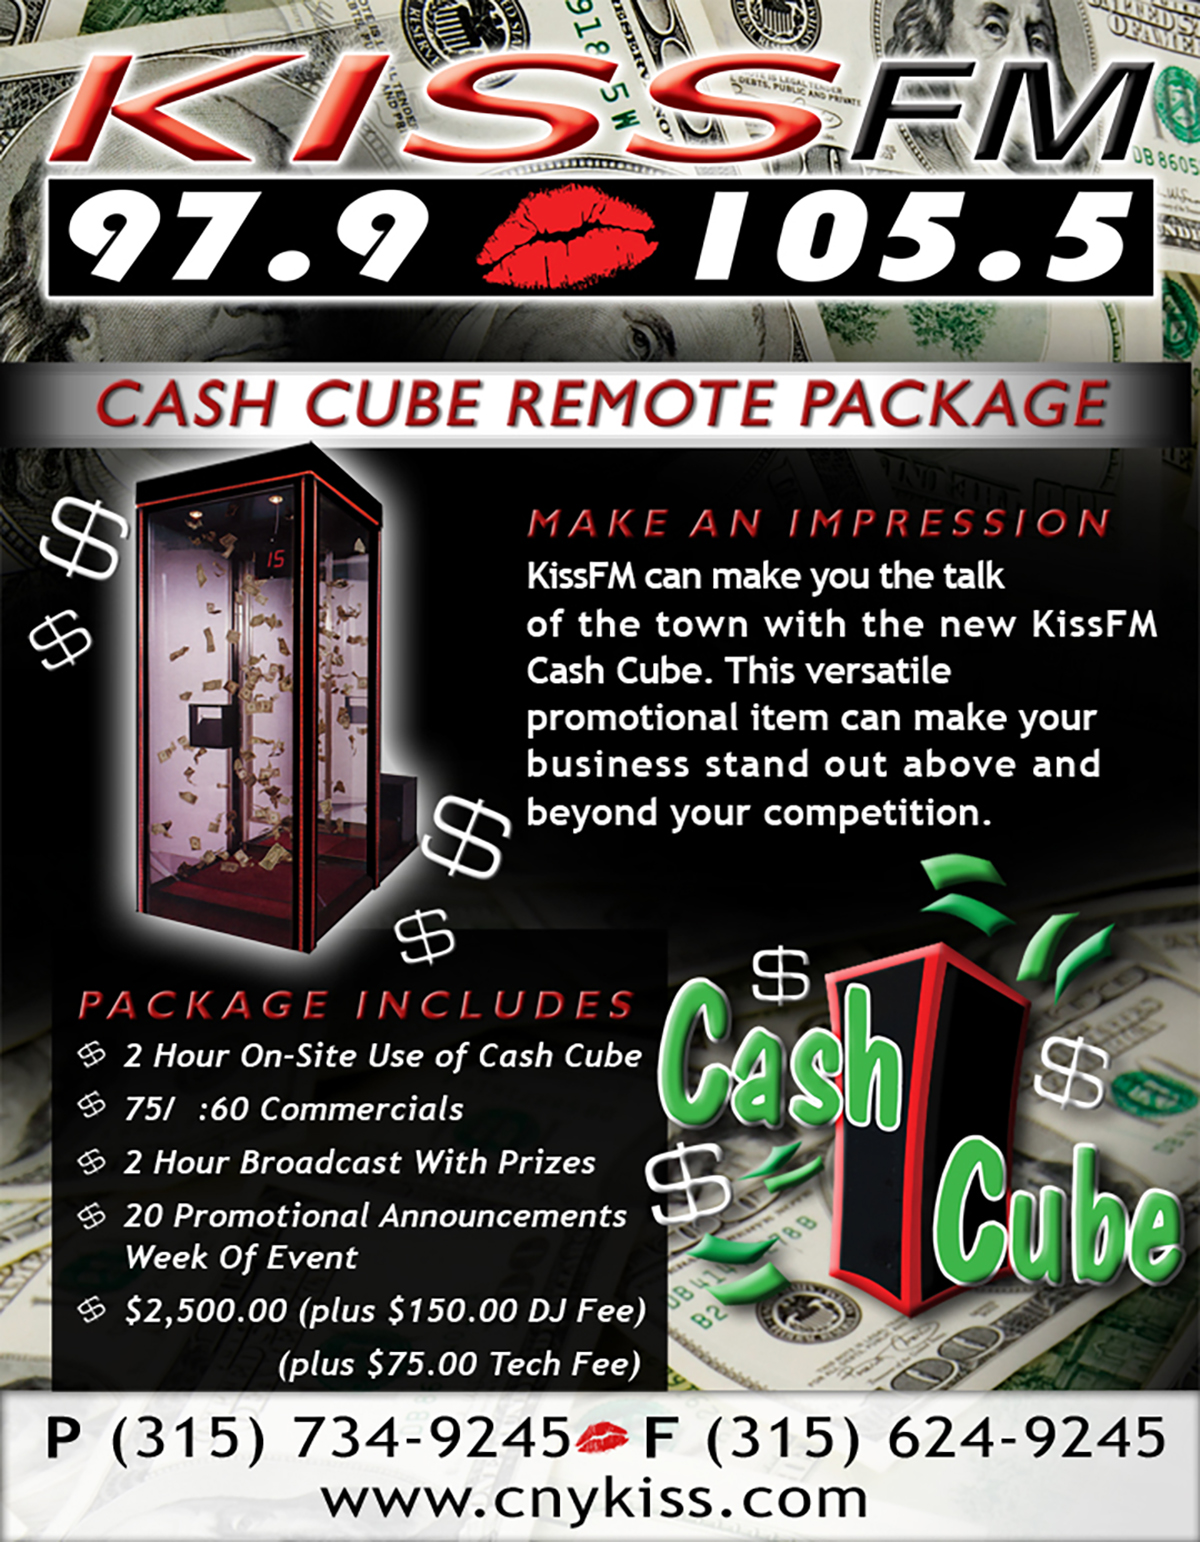 KISS-FM Cash Cube Package